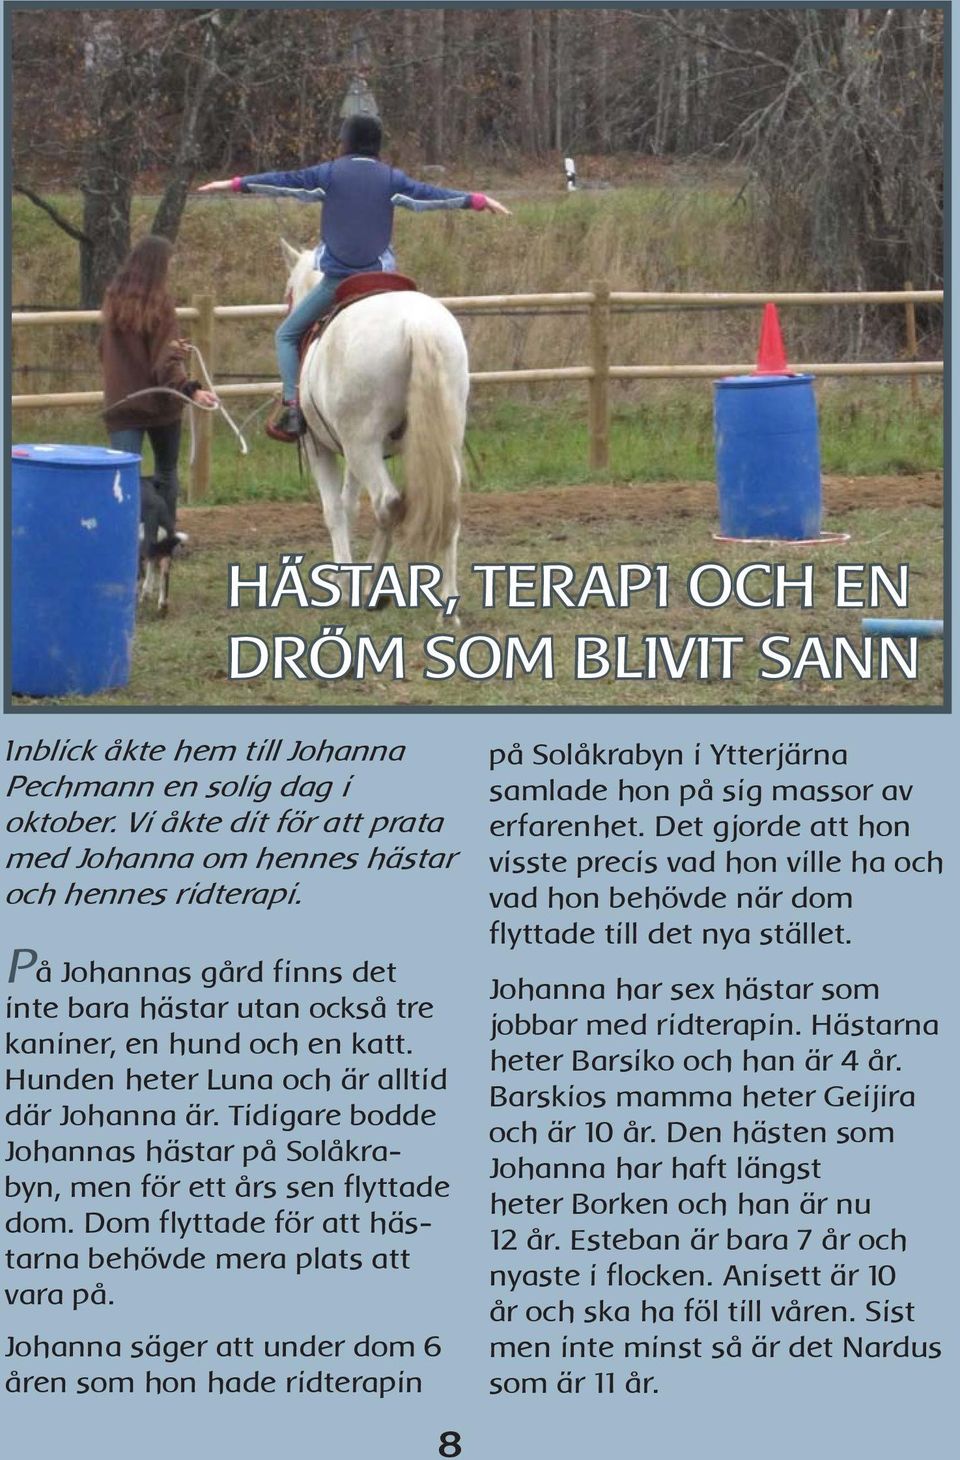 Tidigare bodde Johannas hästar på Solåkrabyn, men för ett års sen flyttade dom. Dom flyttade för att hästarna behövde mera plats att vara på.